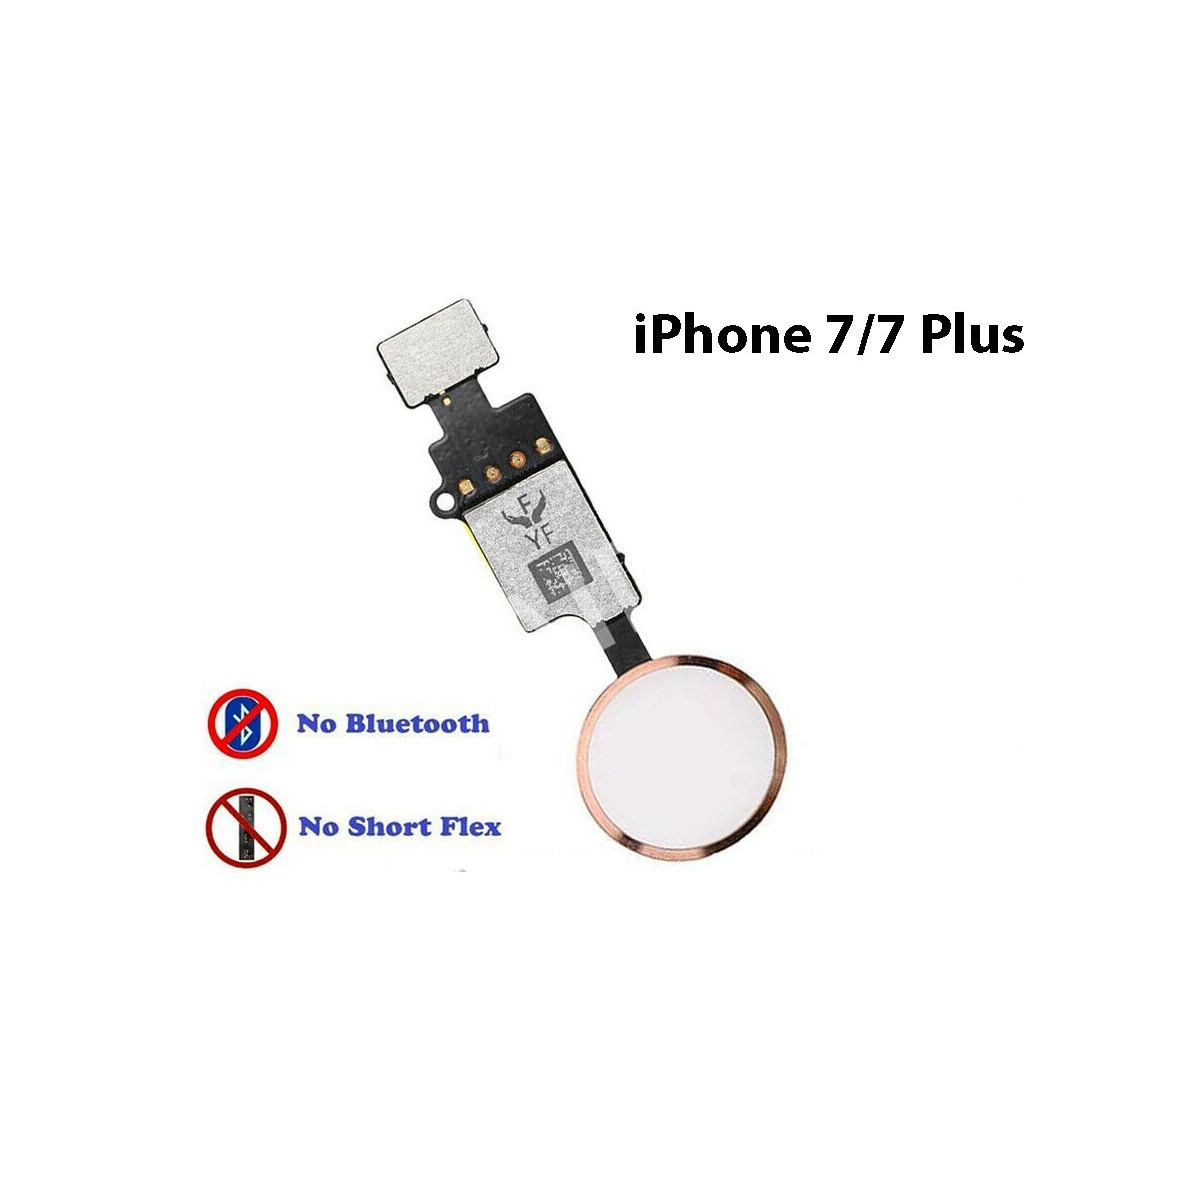 Bouton home fonctionnel (non factice) blanc-rose compatible iPhone 7 Plus